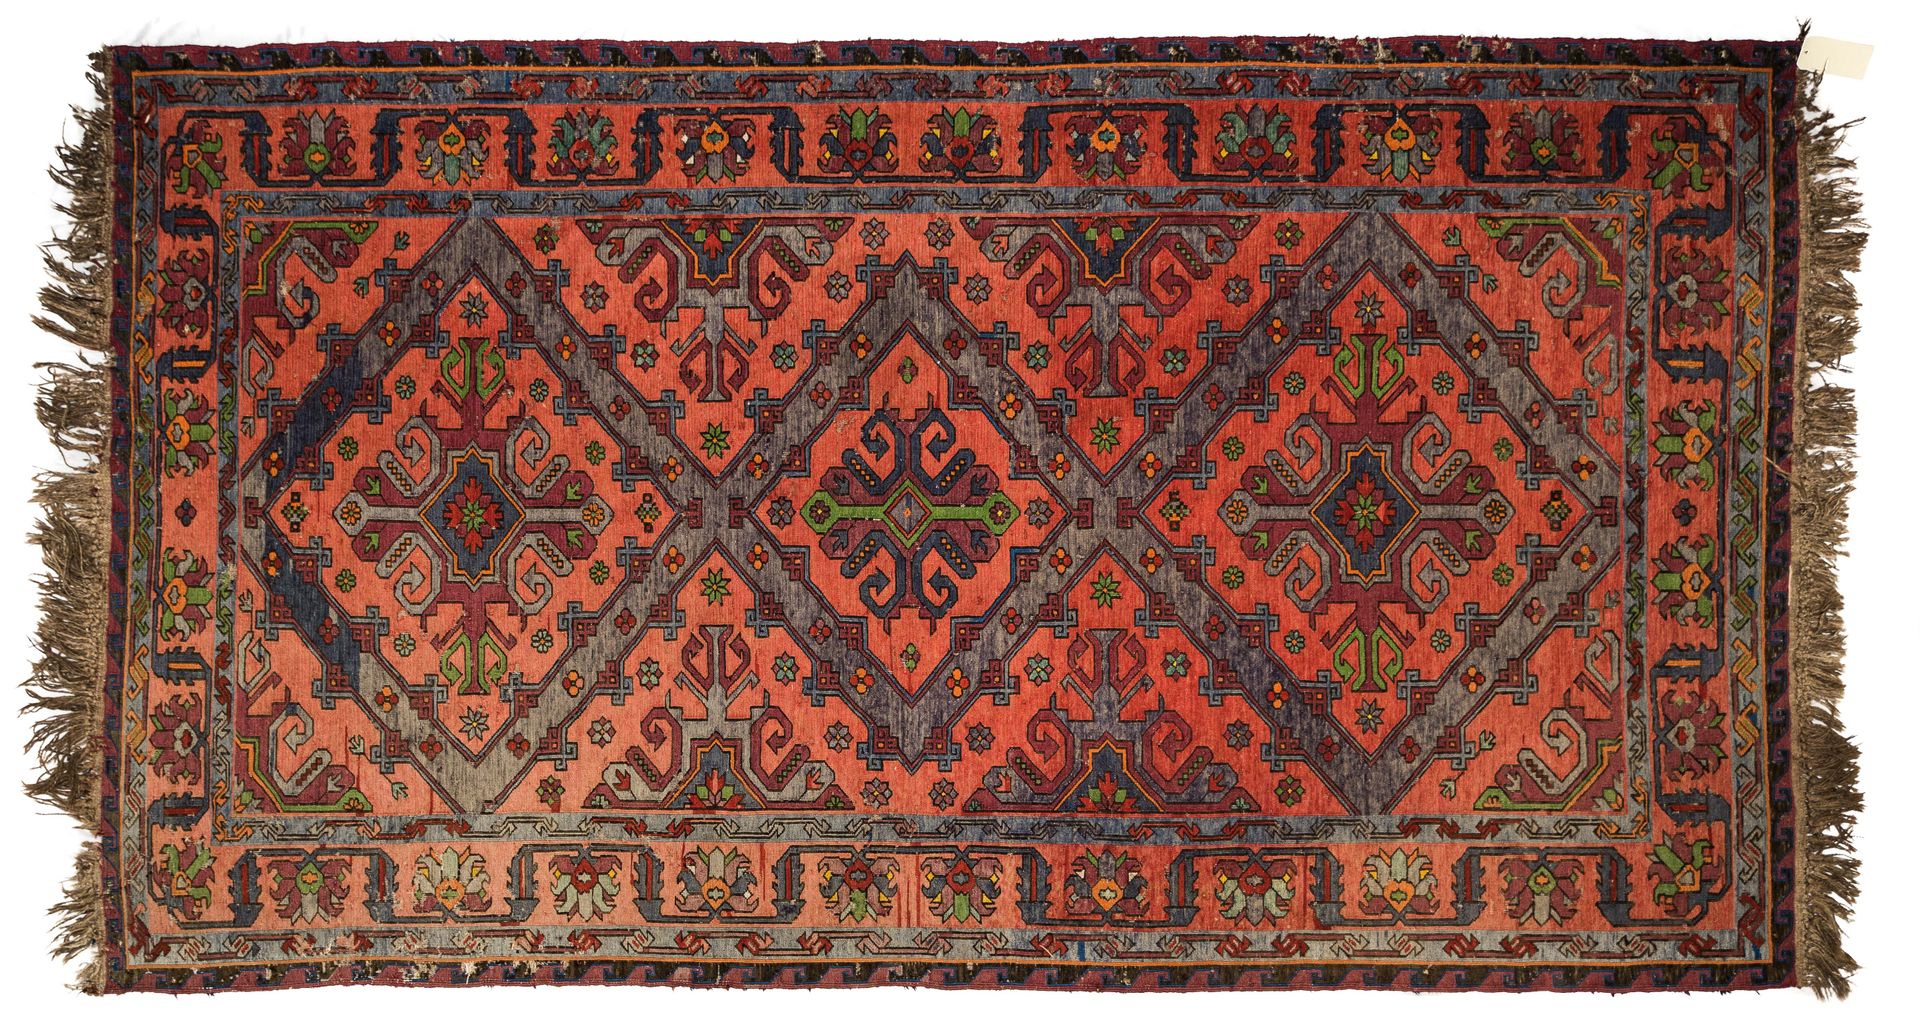 Tapis Kilim Soumak, Caucase 基里姆-苏马克地毯，高加索地区



红色背景，装饰三个蓝色十字形徽章，辫子间有花环边框。

褪色 l &hellip;